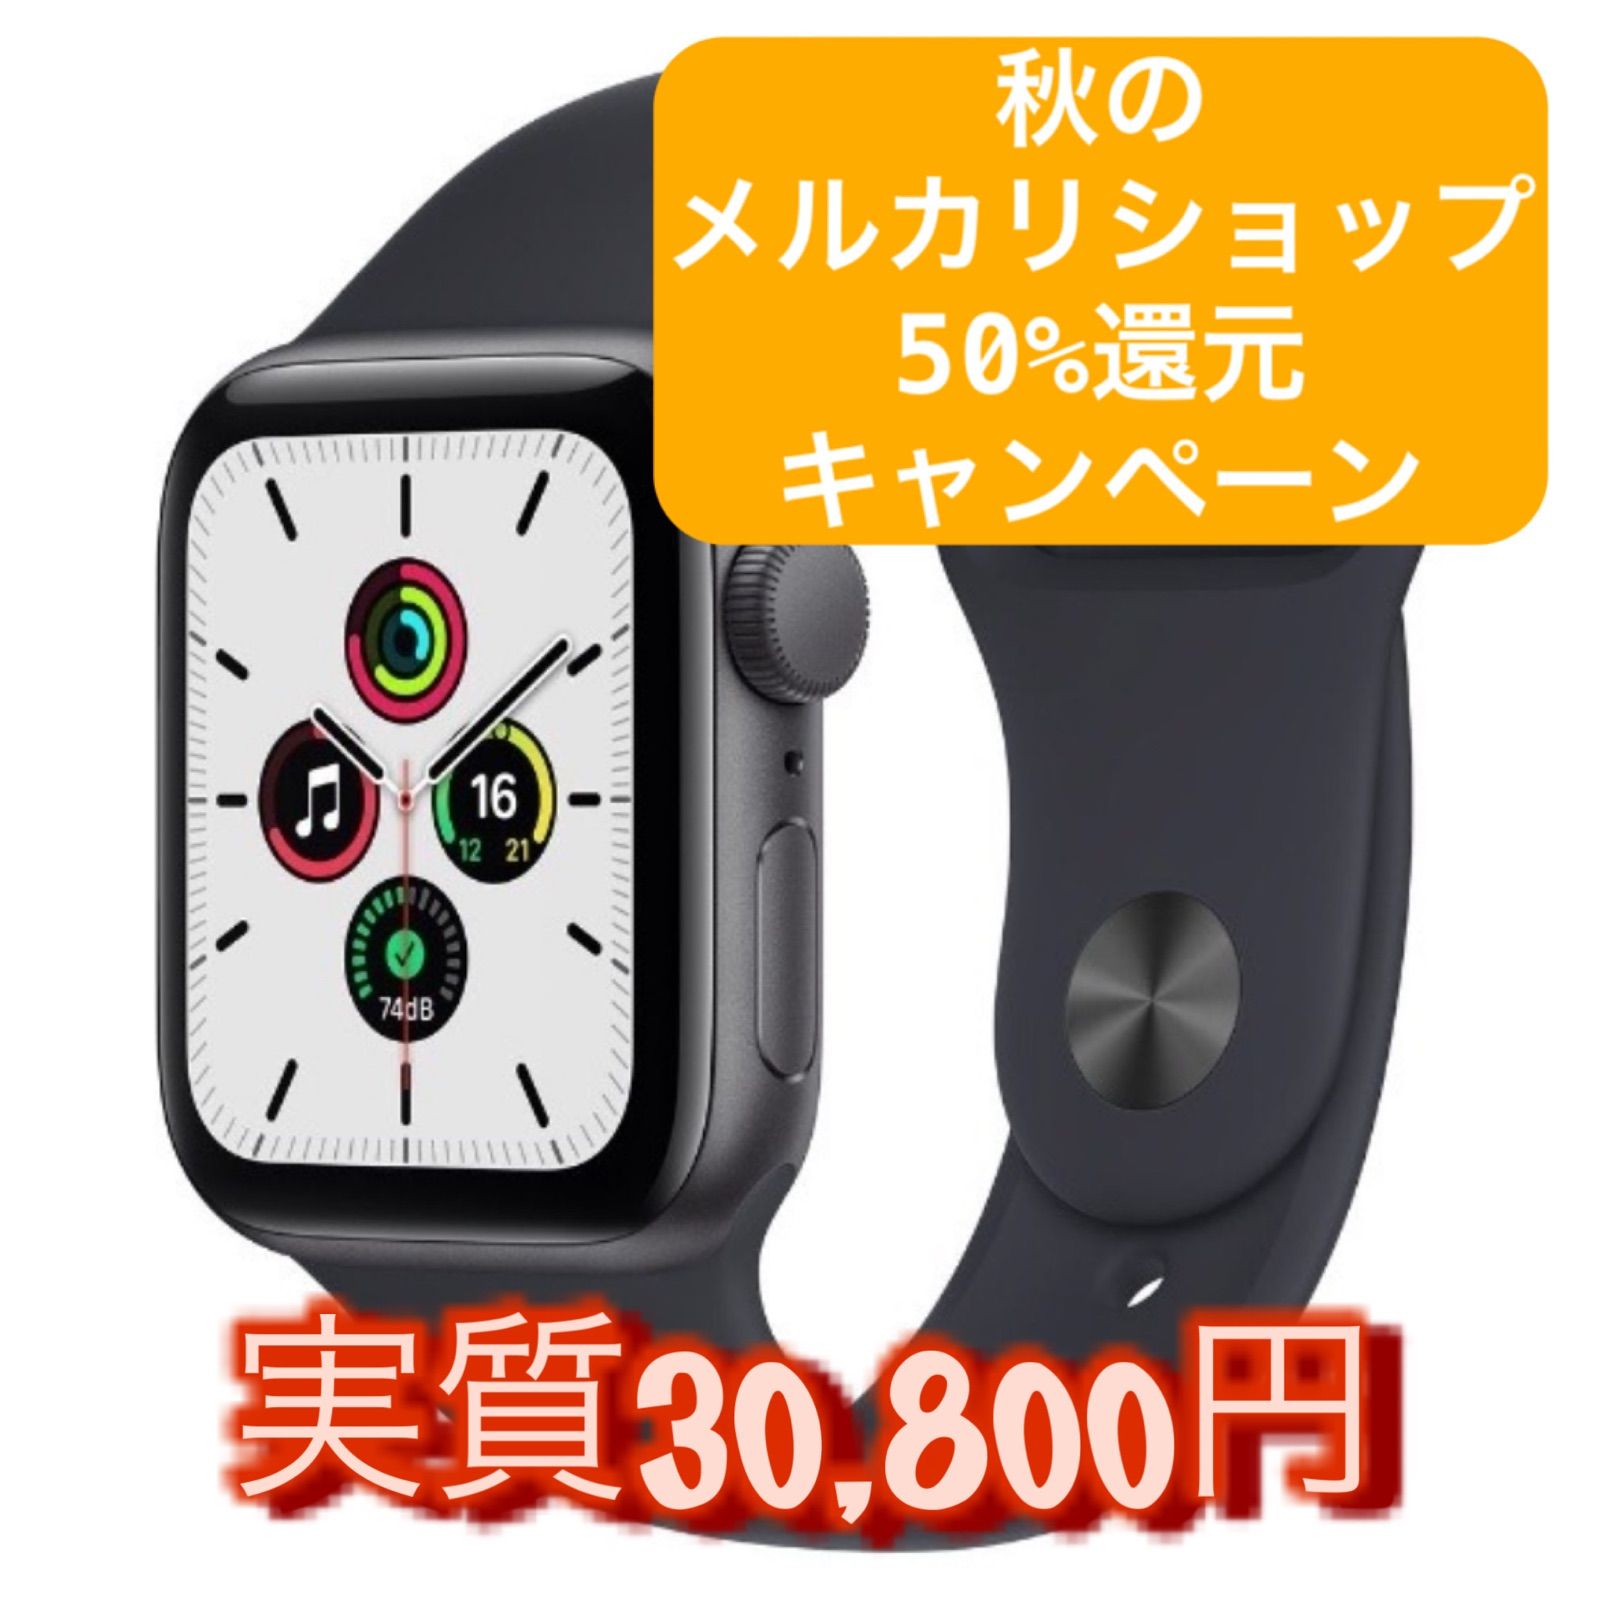 Apple Watch SE 40MM スペースグレー 新品未使用 - スマートフォン/携帯電話